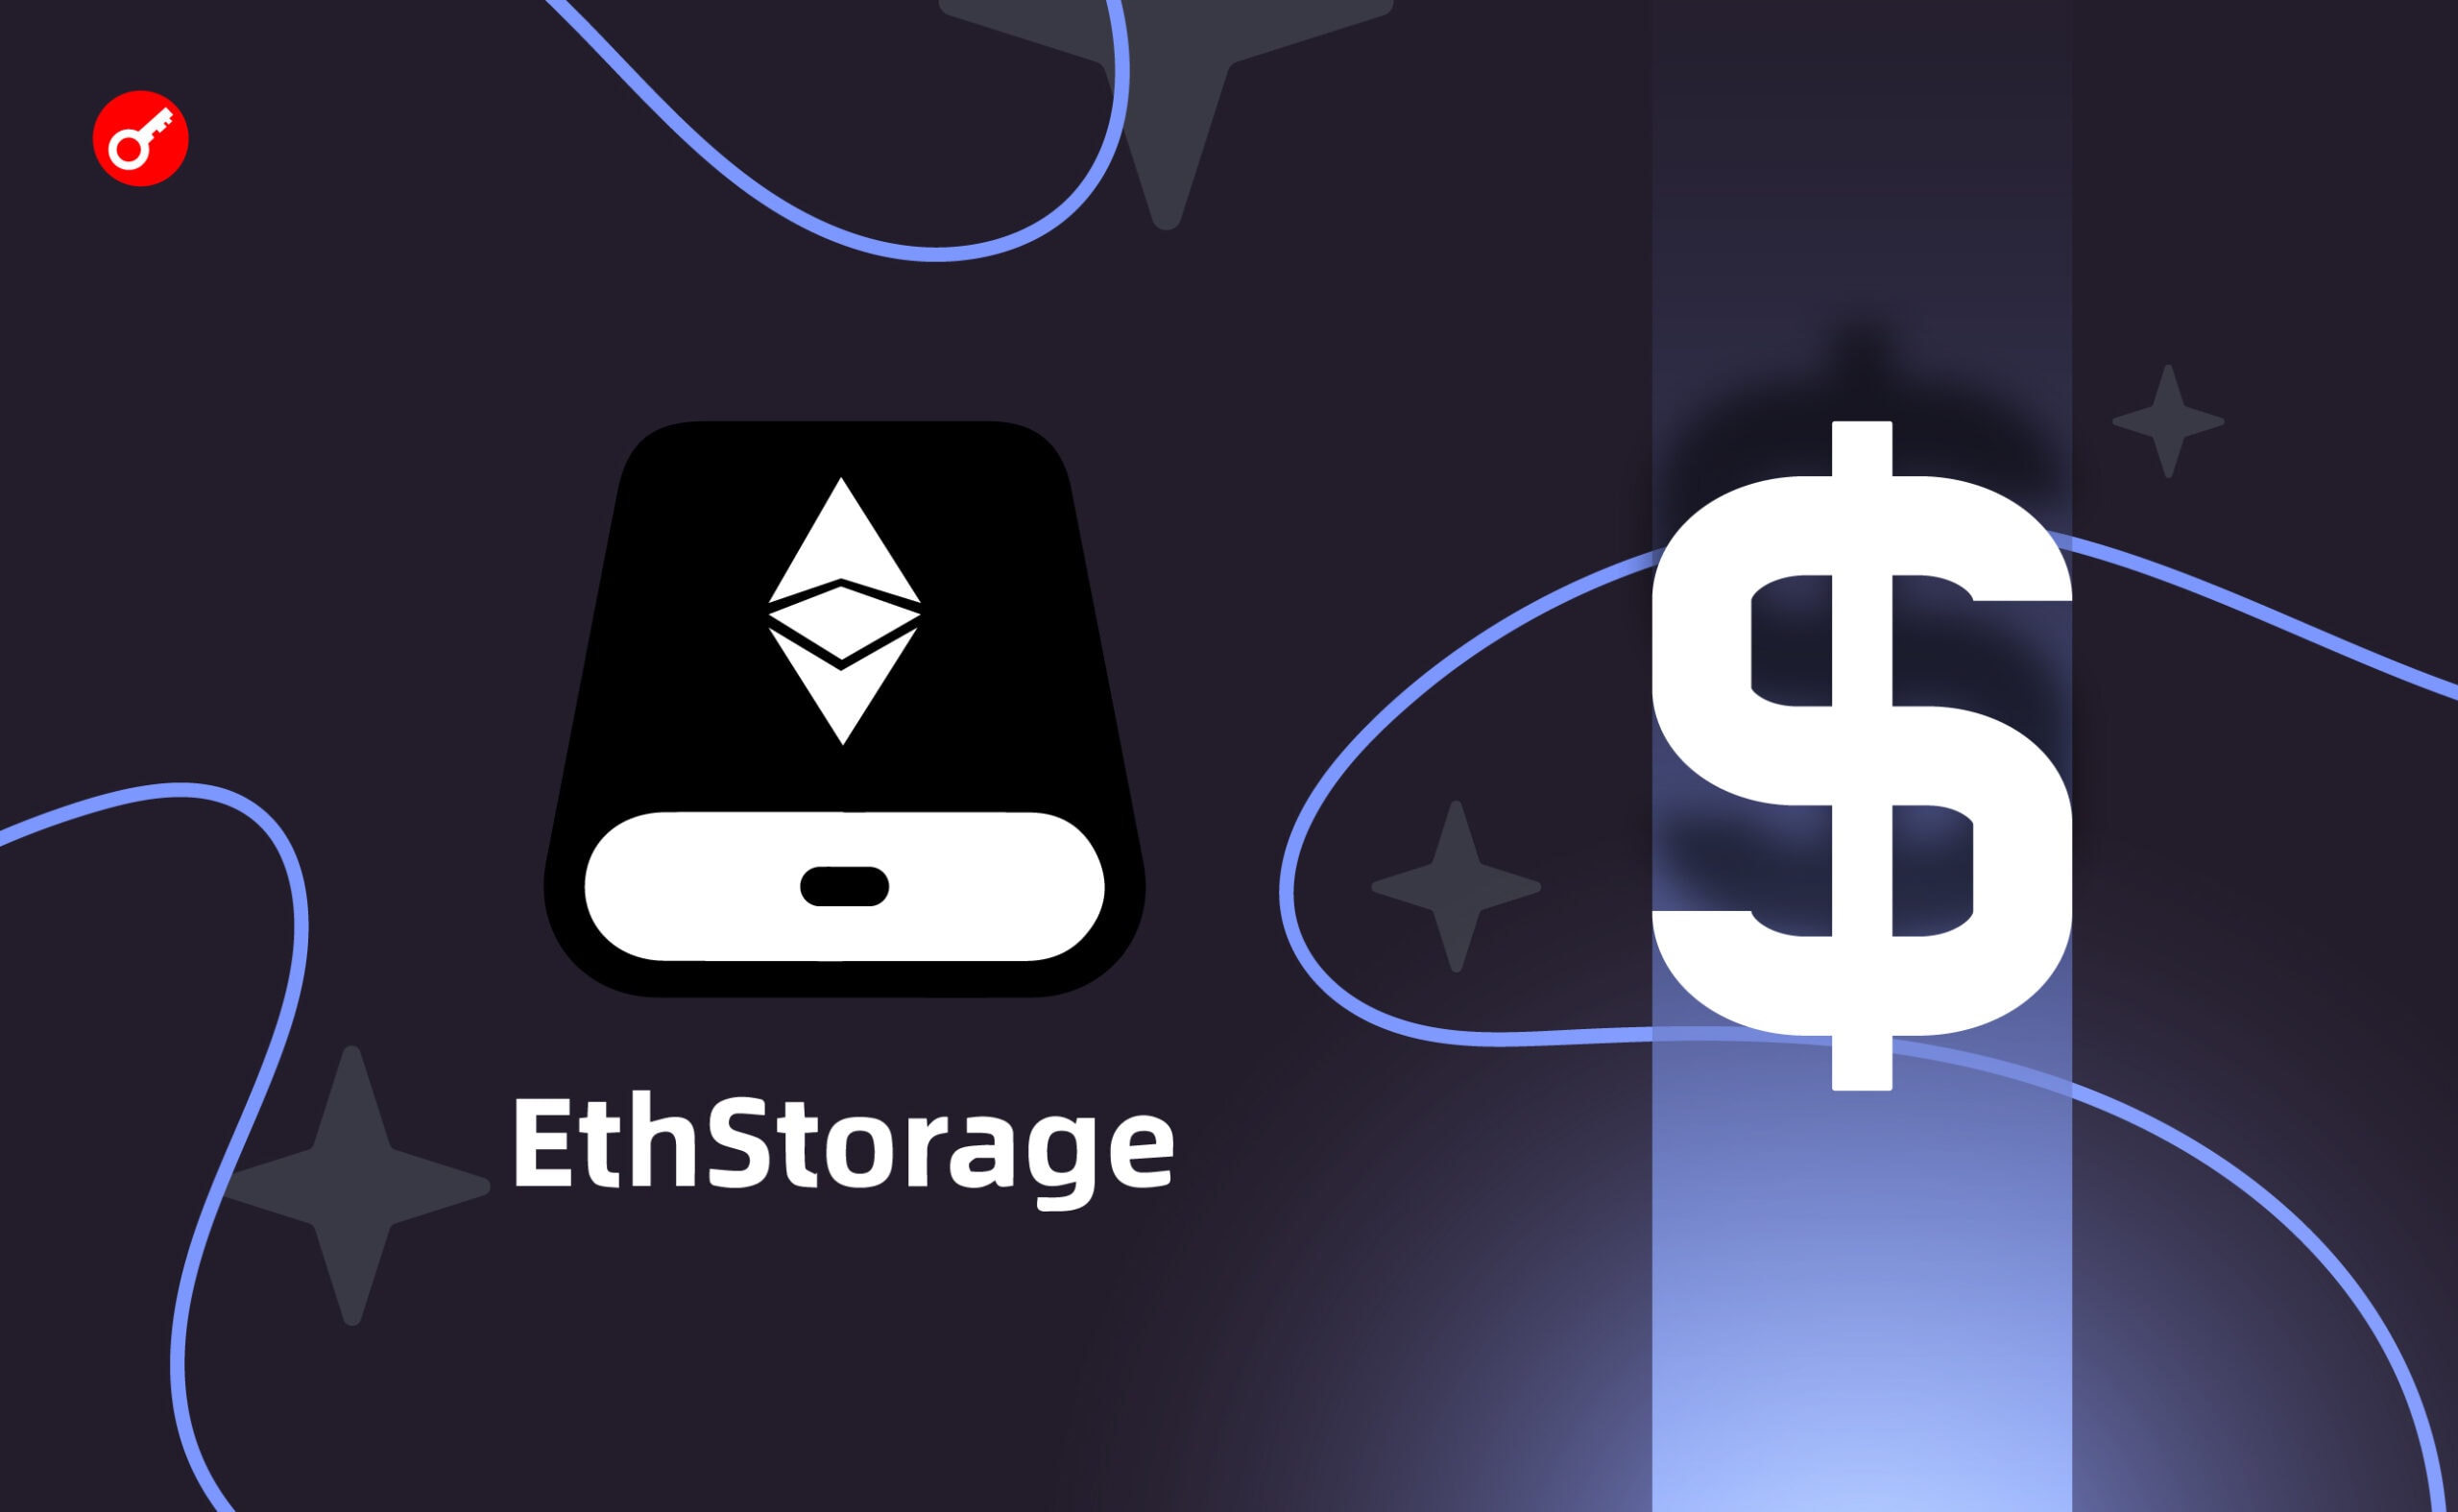 EthStorage pozyskuje 7 milionów dolarów inwestycji. Główny kolaż wiadomości.